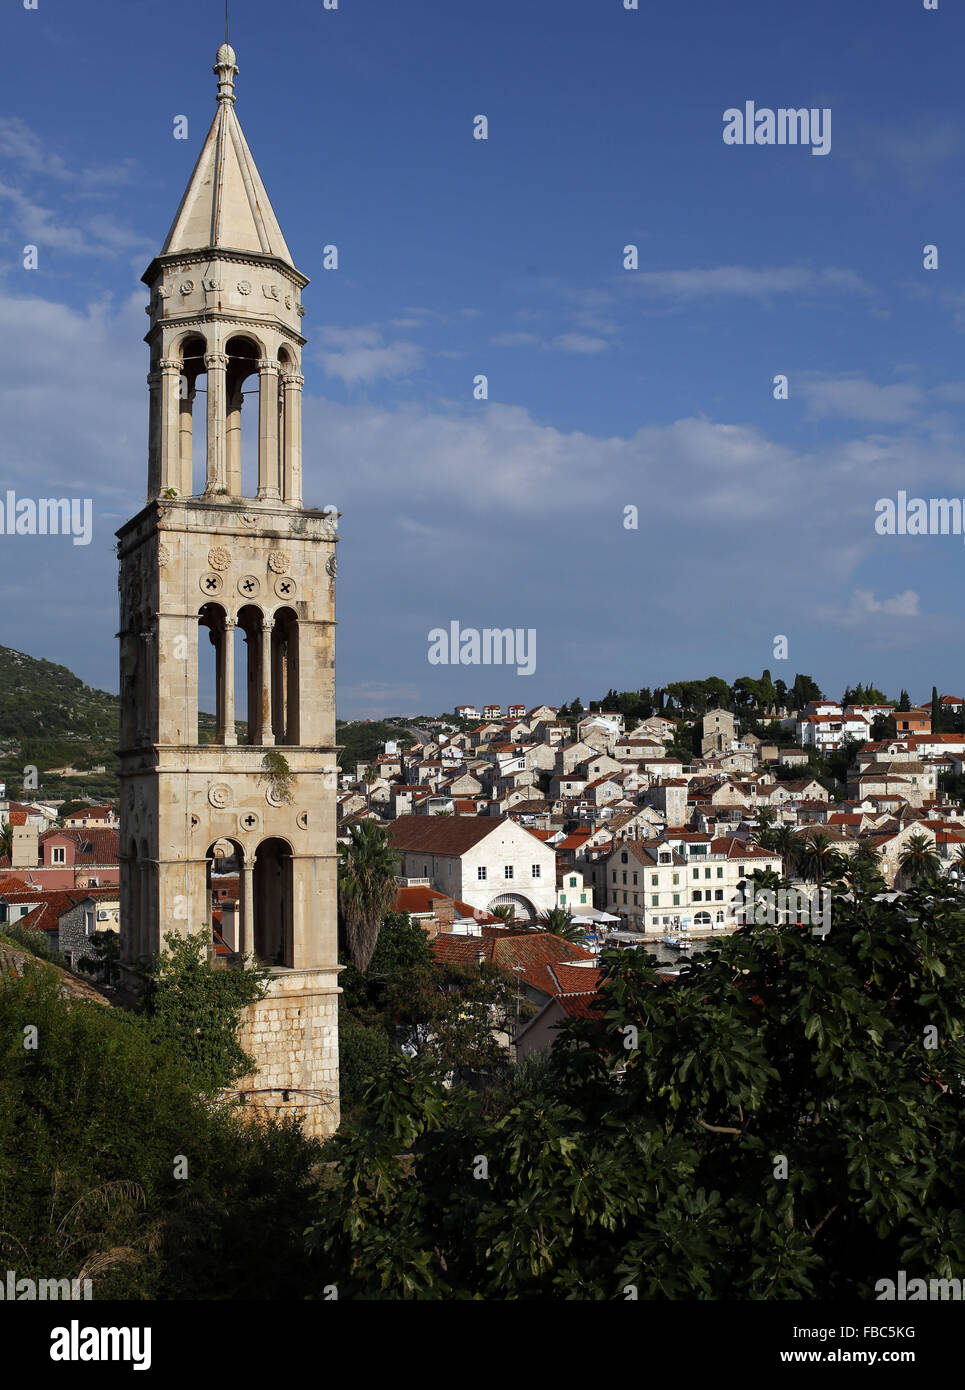 Turm des Franziskanerklosters mit Blick auf die Adria Küstenhafen Stadt Hvar auf der Insel Hvar, Kroatien Stockfoto